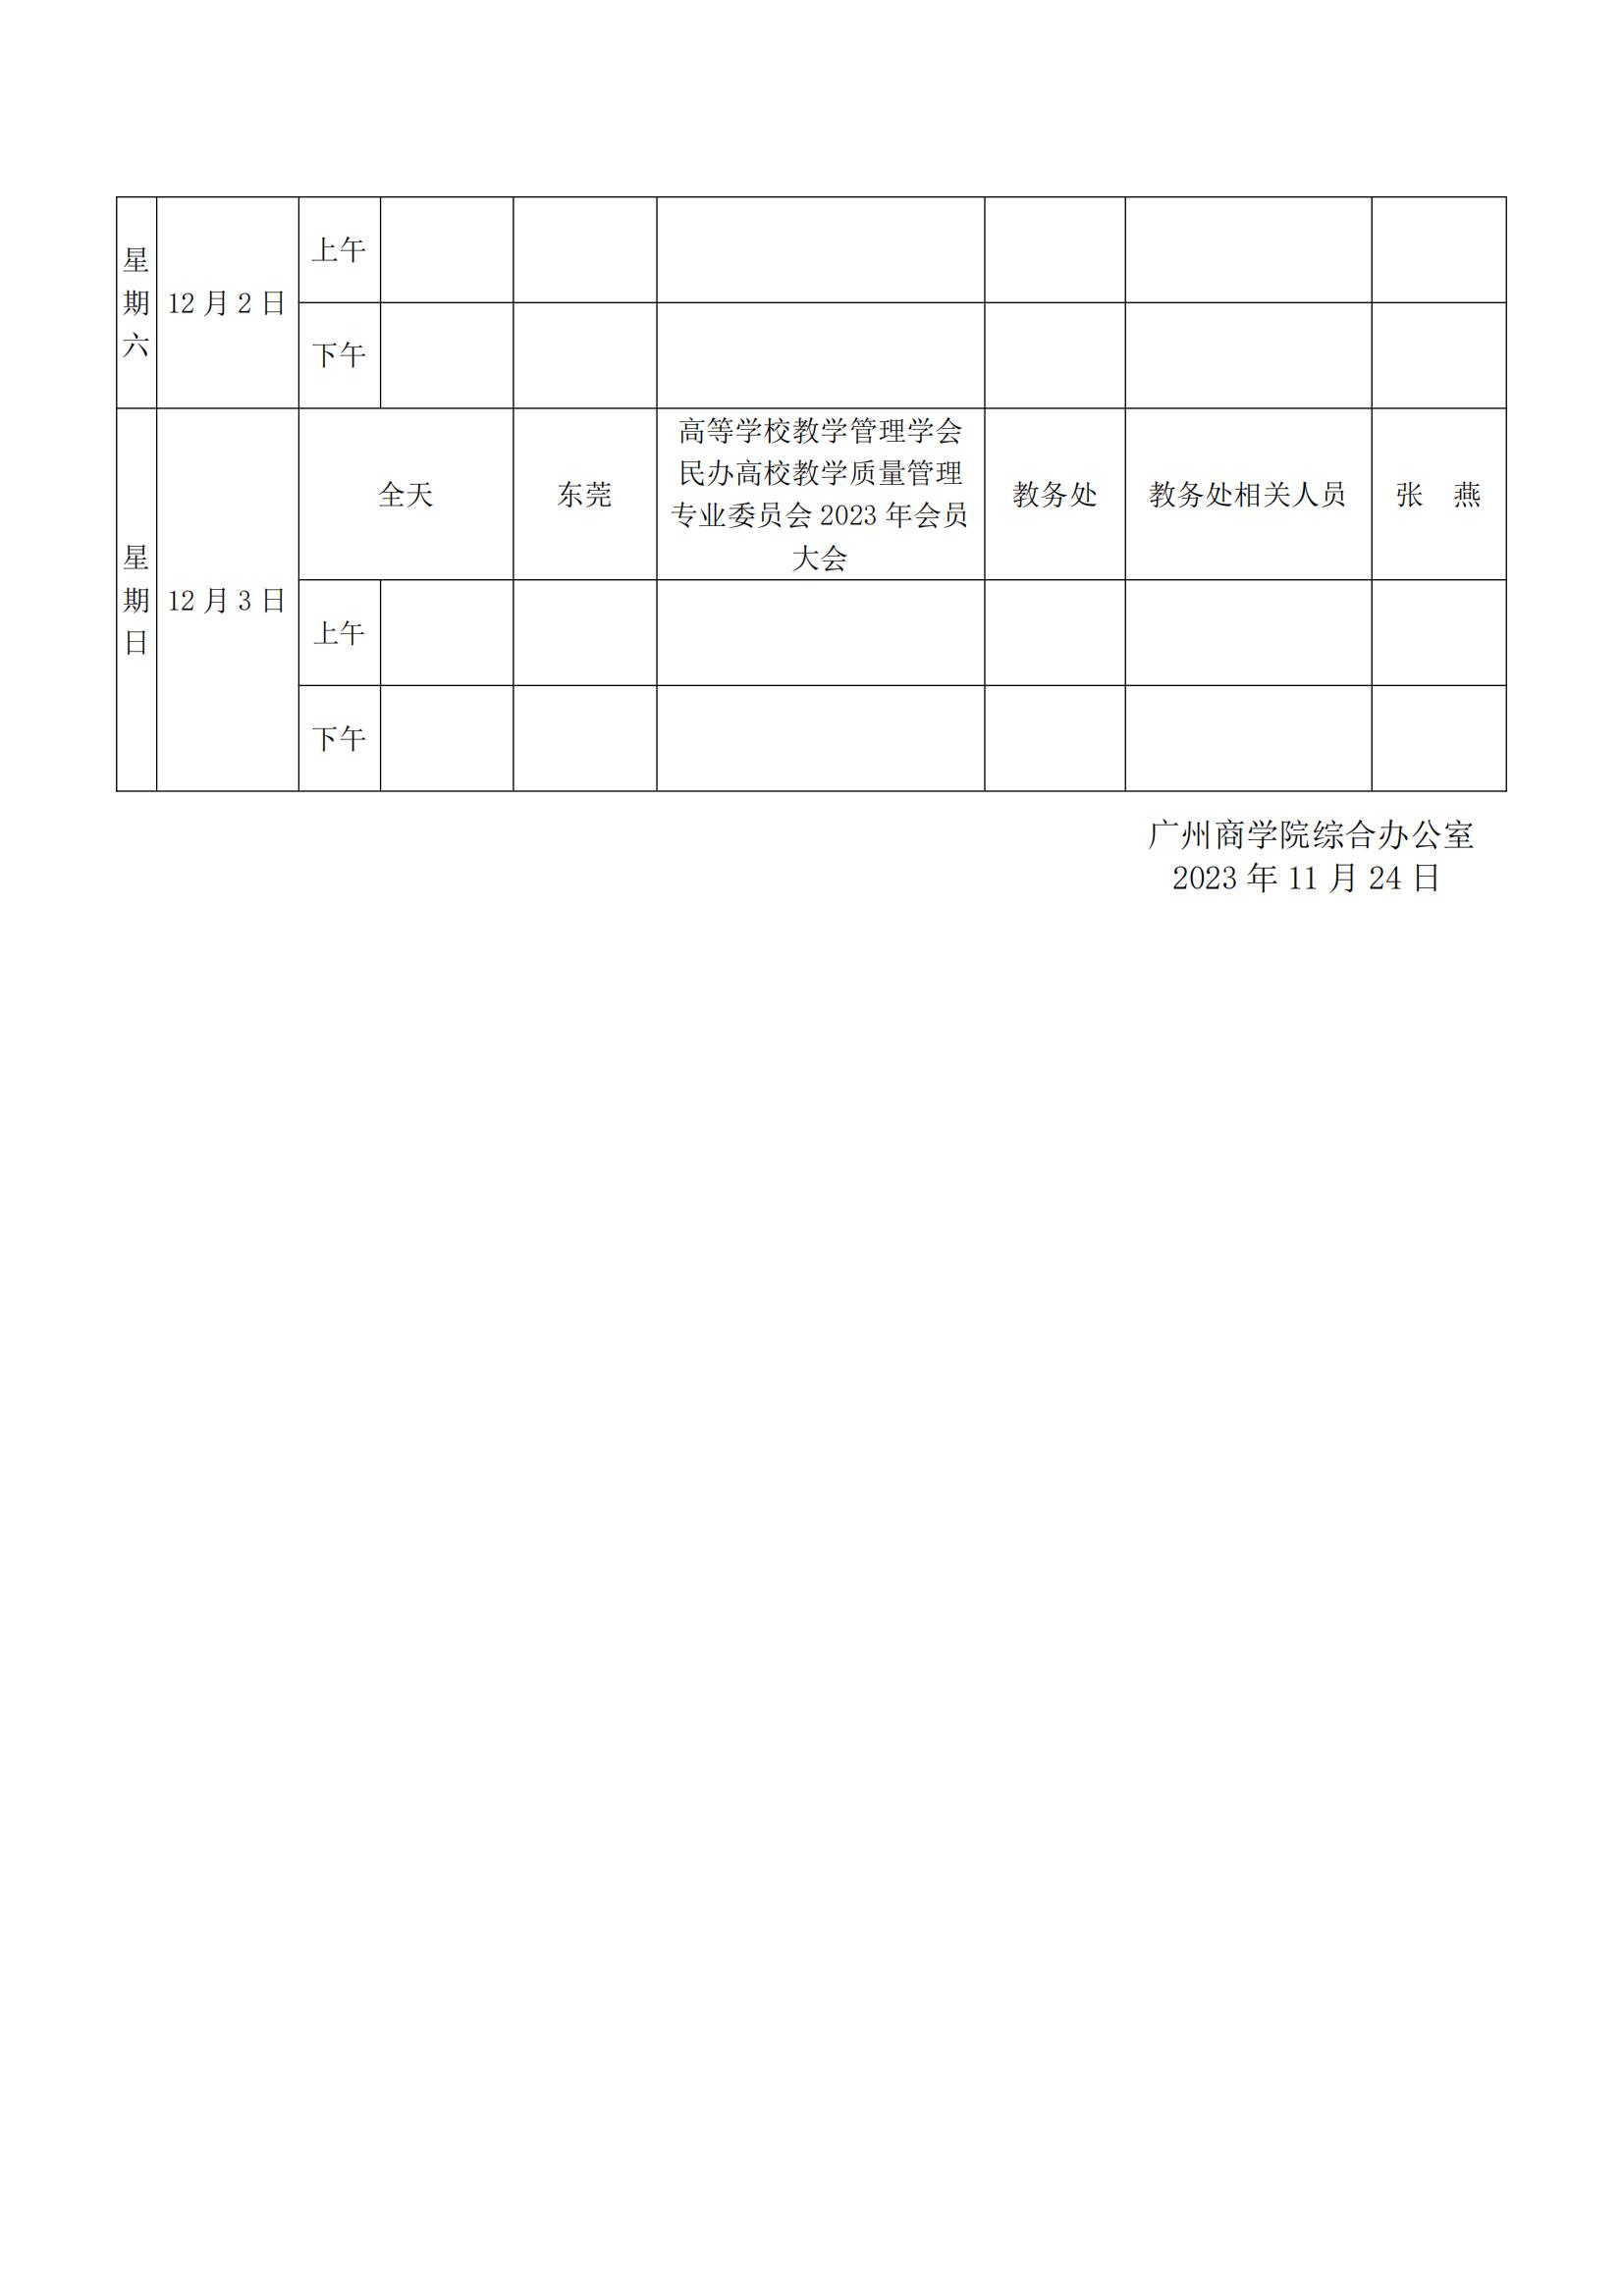 广州商学院2023-2024学年第一学期一周重要工作安排第13周（1124）_02.jpg